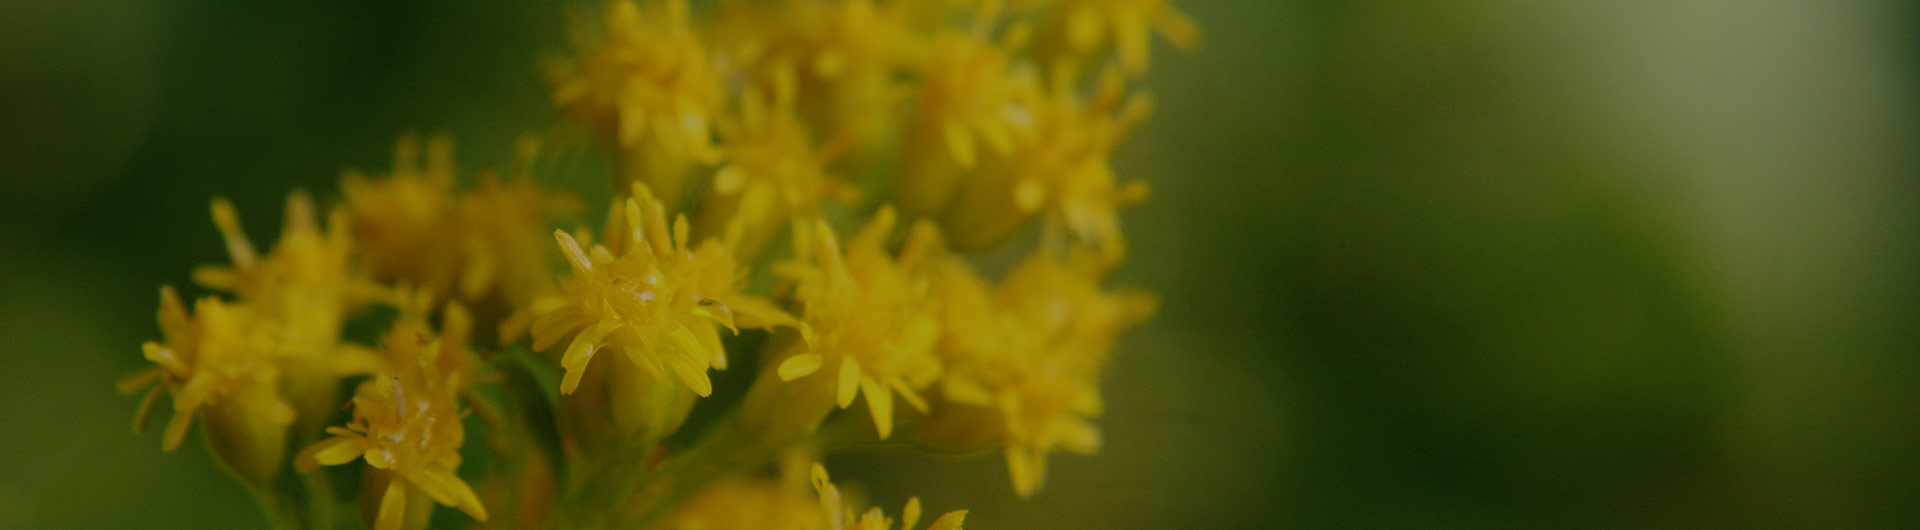 Goldenrod flowers, Kentucky's state flower.